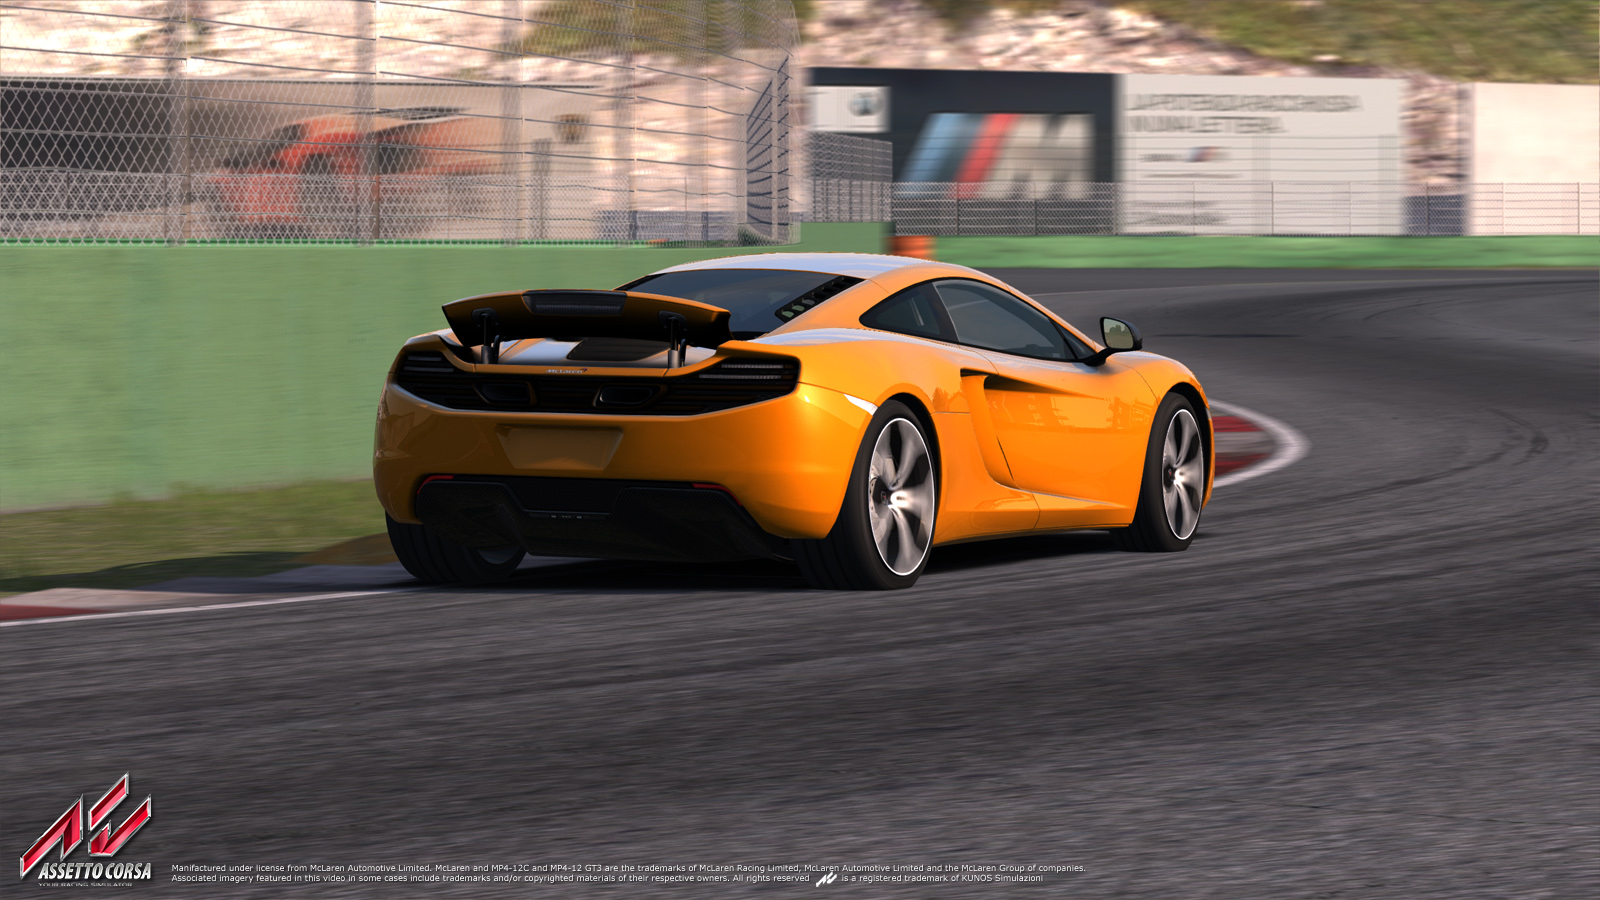 McLaren-Vallelunga-01.jpg